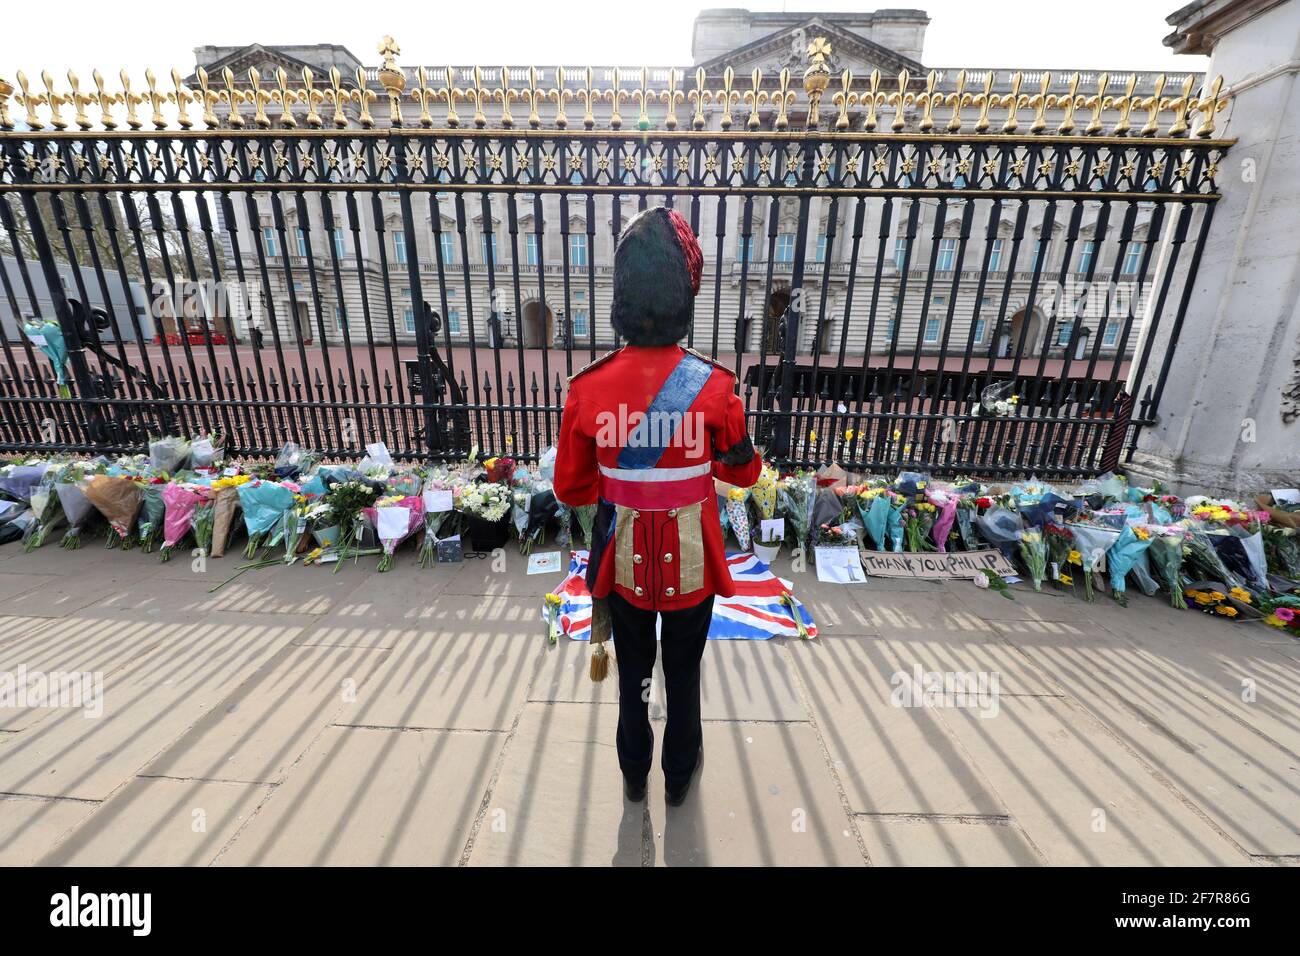 Londres, Royaume-Uni. 9 avril 2021. Hommages floraux rendus par les gens au Palais de Buckingham après l'annonce de la mort du prince Philip crédit: Paul Brown/Alay Live News Banque D'Images